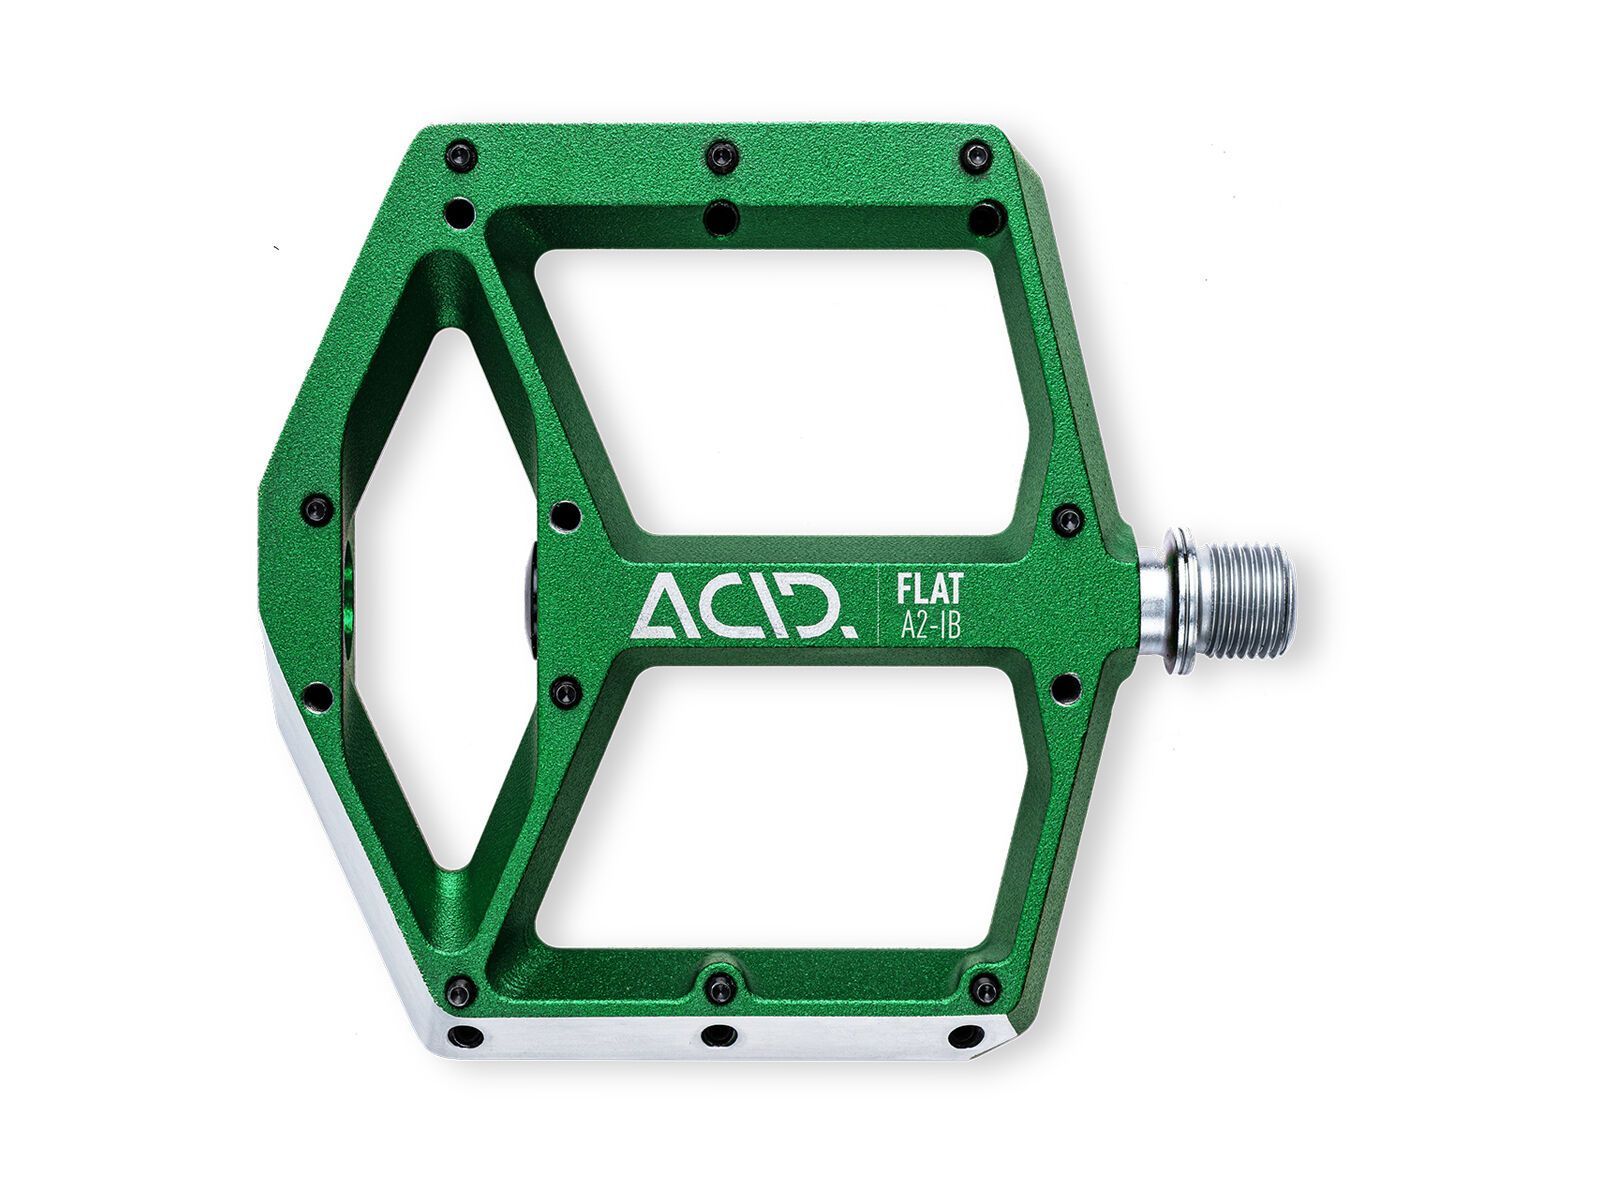 Cube Acid Pedale Flat A2-IB green 932570000